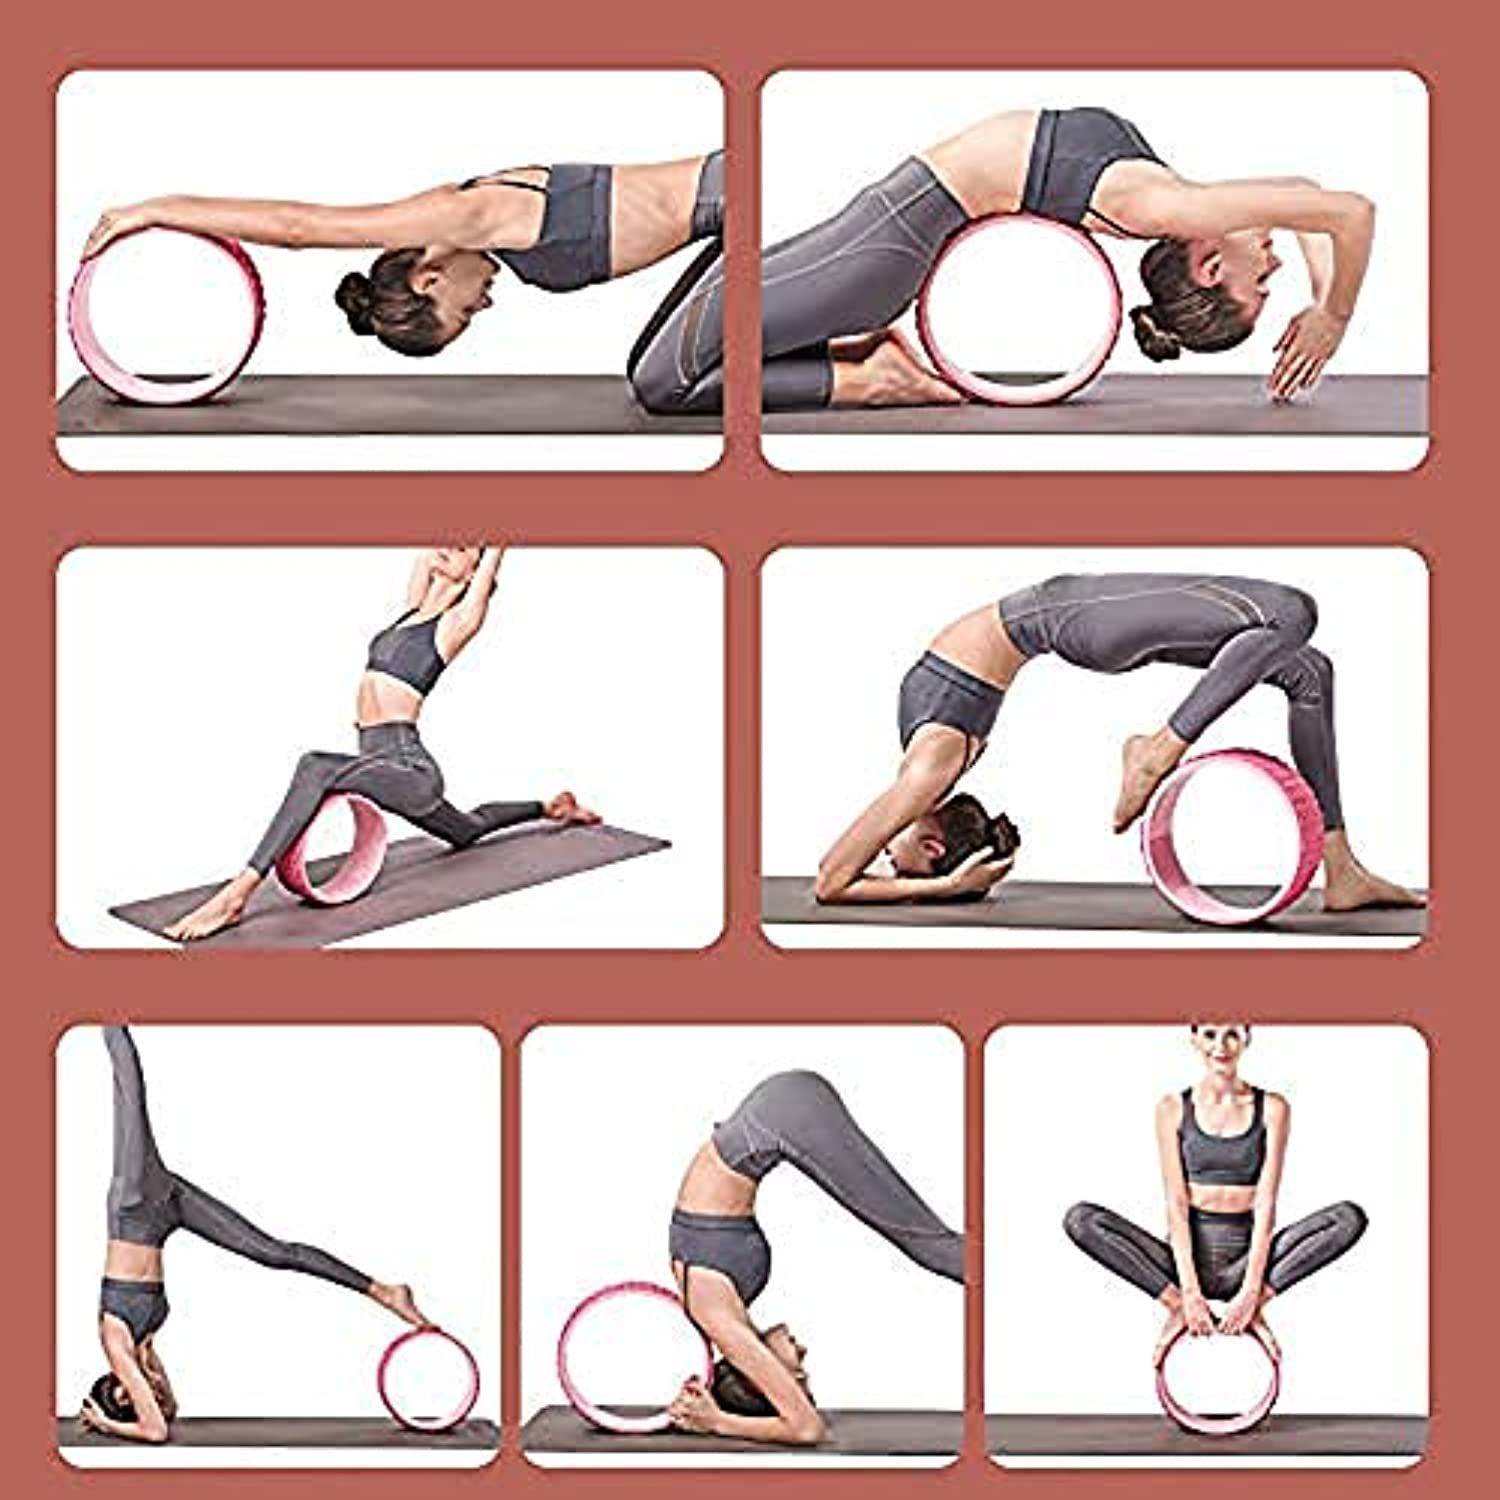 Rueda de yoga: la rueda de apoyo de yoga más fuerte y cómoda para posturas  de yoga, rodillo perfecto para estirar, aumentar la flexibilidad y mejorar  la flexión hacia atrás Vhermosa 2036122-2